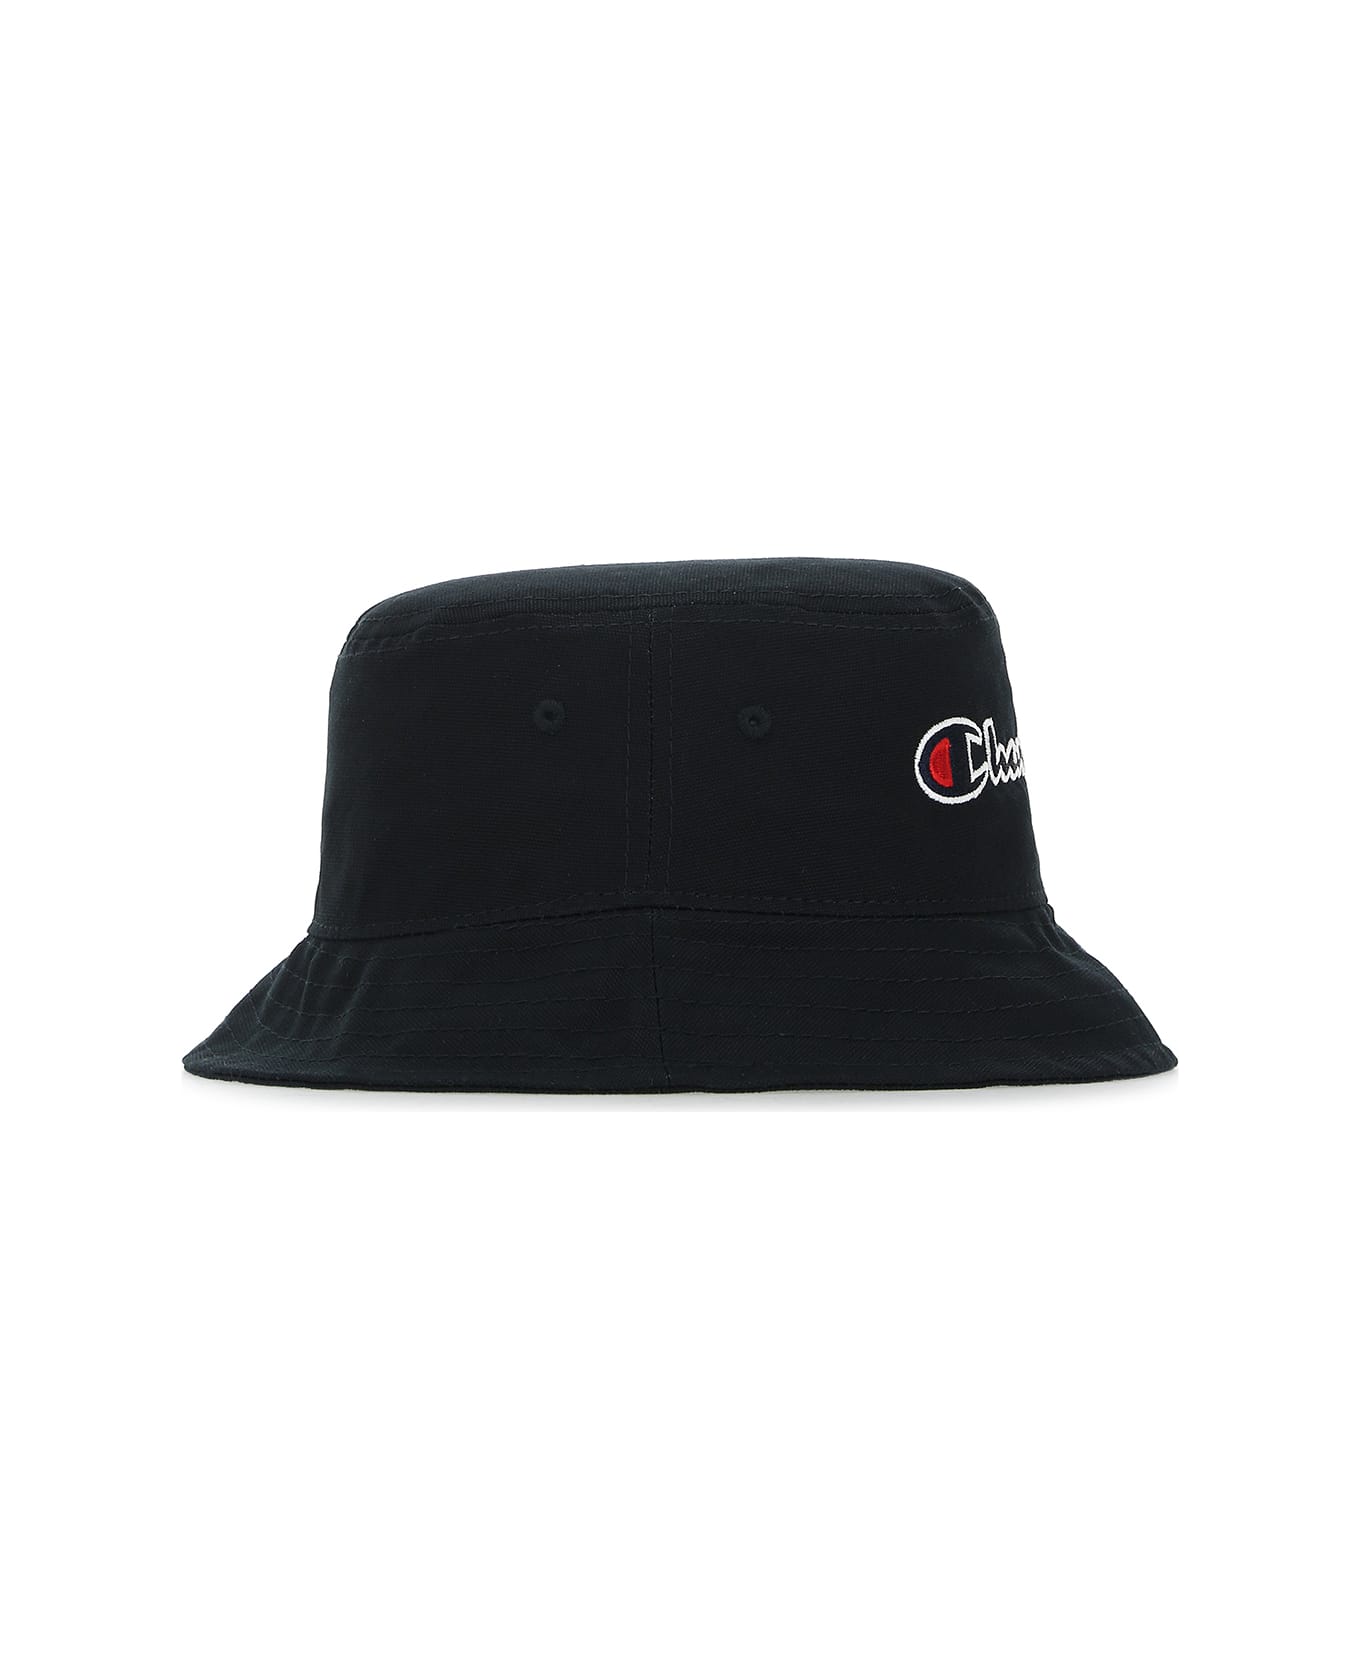 Champion Black Cotton Bucket Hat - KK001